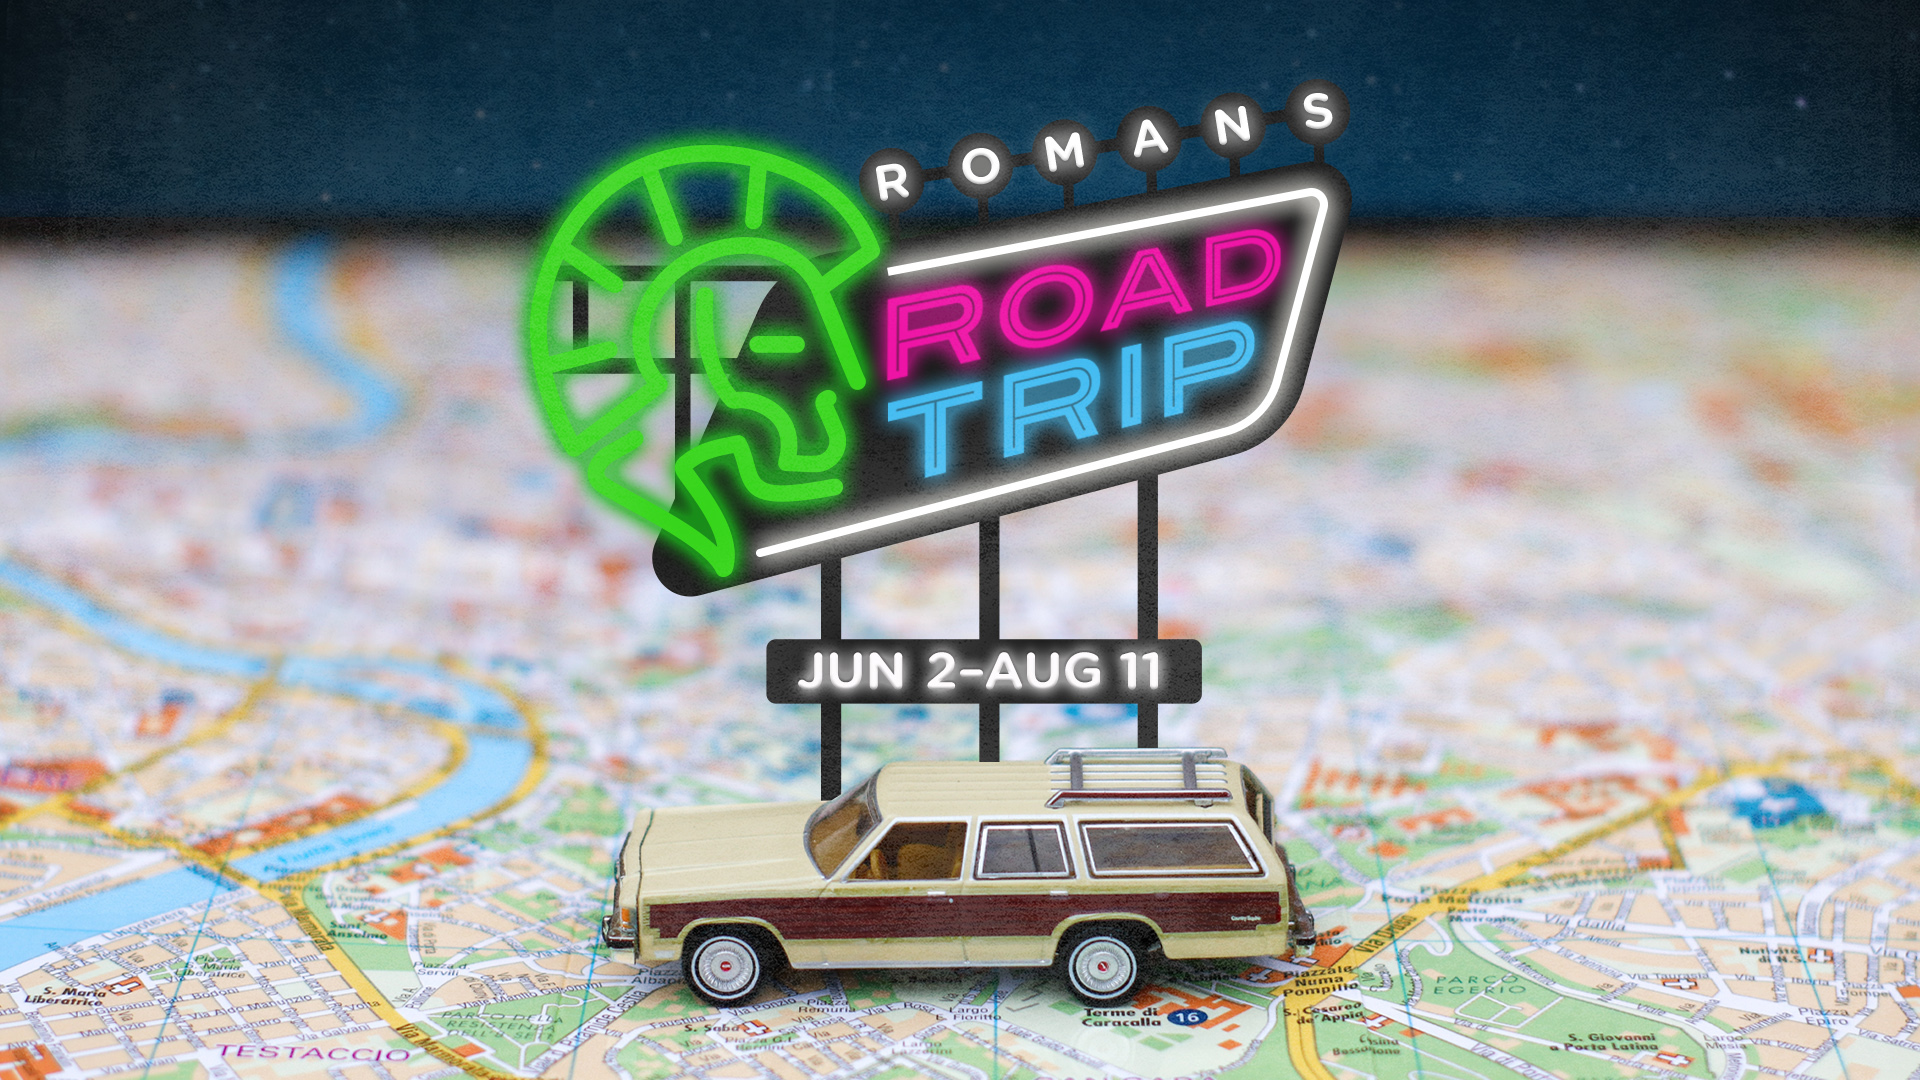 romans-road-trip-summer-sermon-series-park-cities-baptist-church